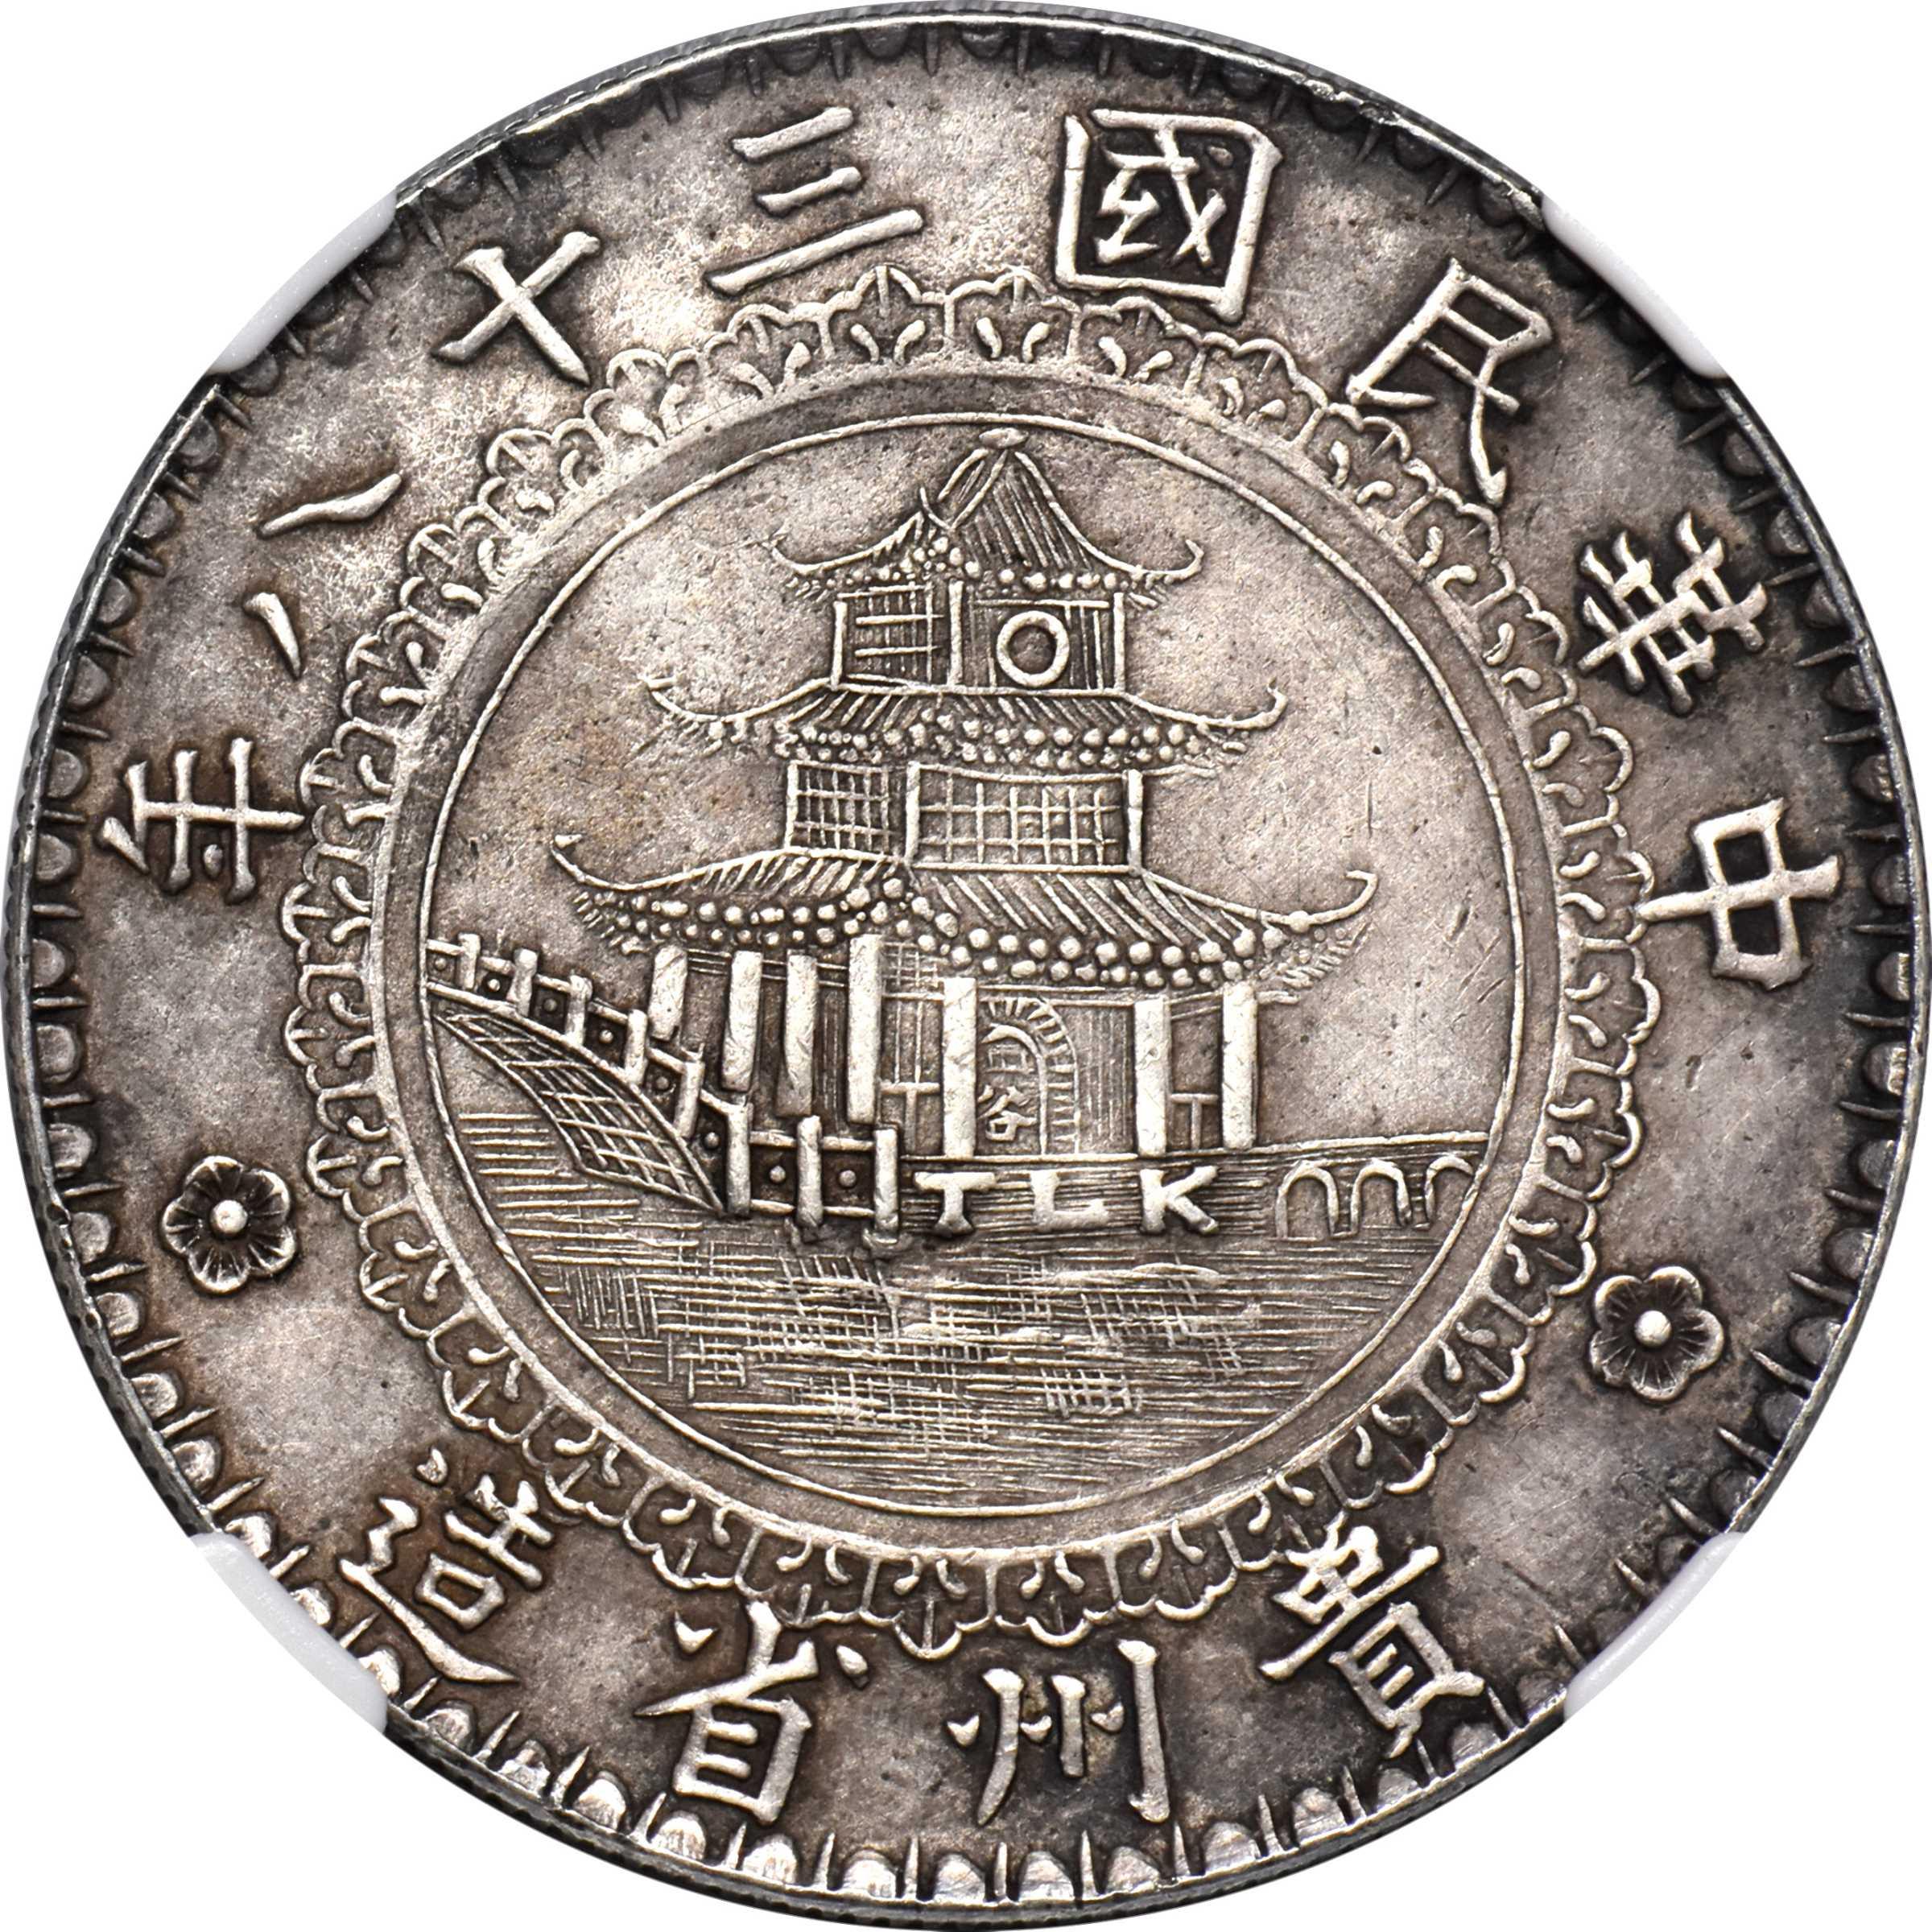 Kweichow Bamboo 40mm コイン 2020年 中国 硬貨 NGC - コレクション